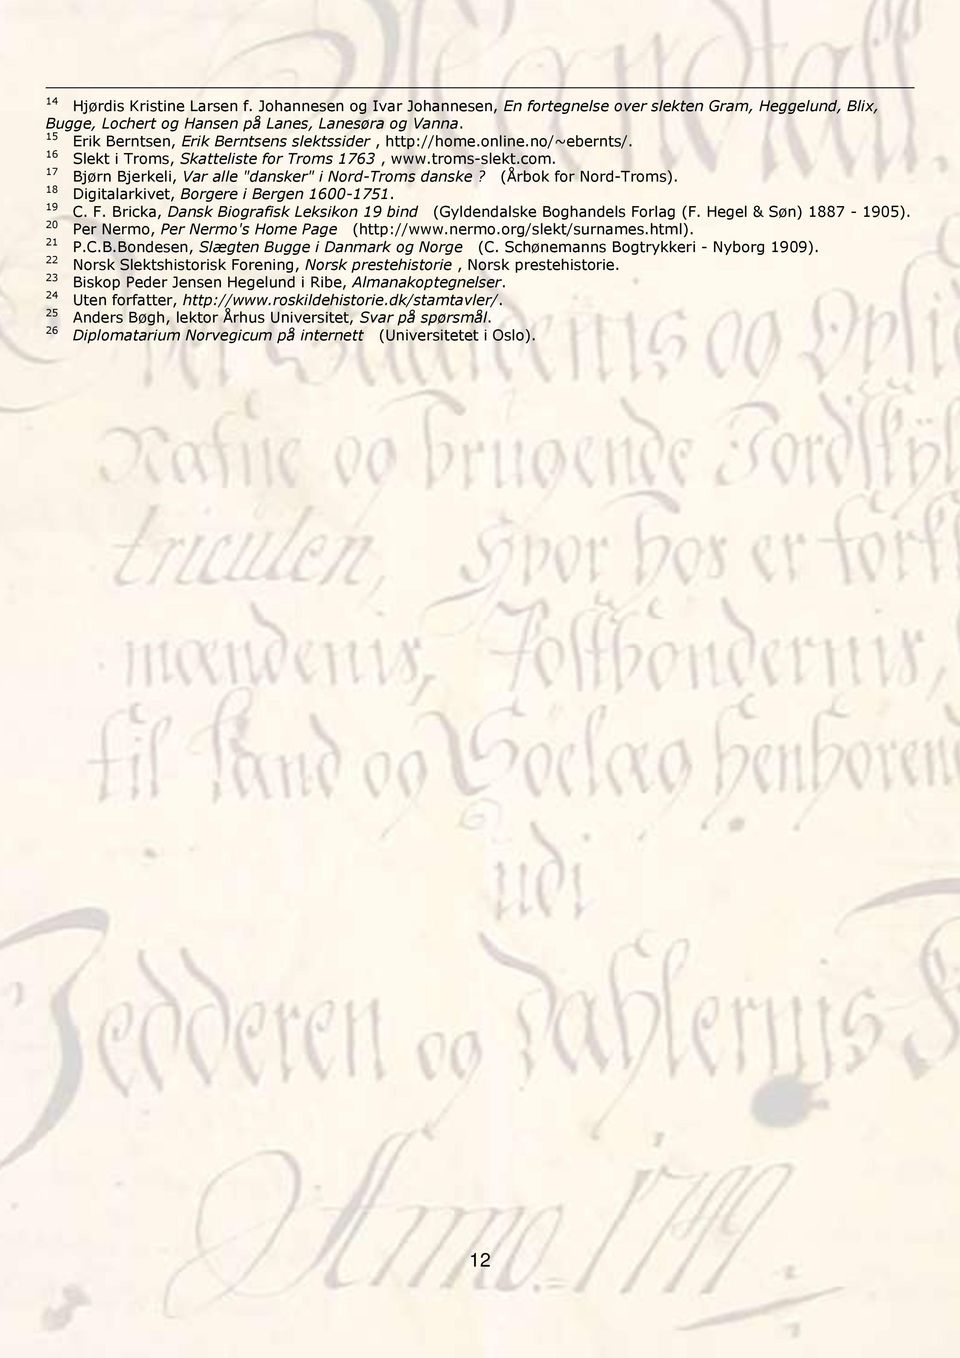 17 Bjørn Bjerkeli, Var alle "dansker" i Nord-Troms danske? (Årbok for Nord-Troms). 18 Digitalarkivet, Borgere i Bergen 1600-1751. 19 C. F.